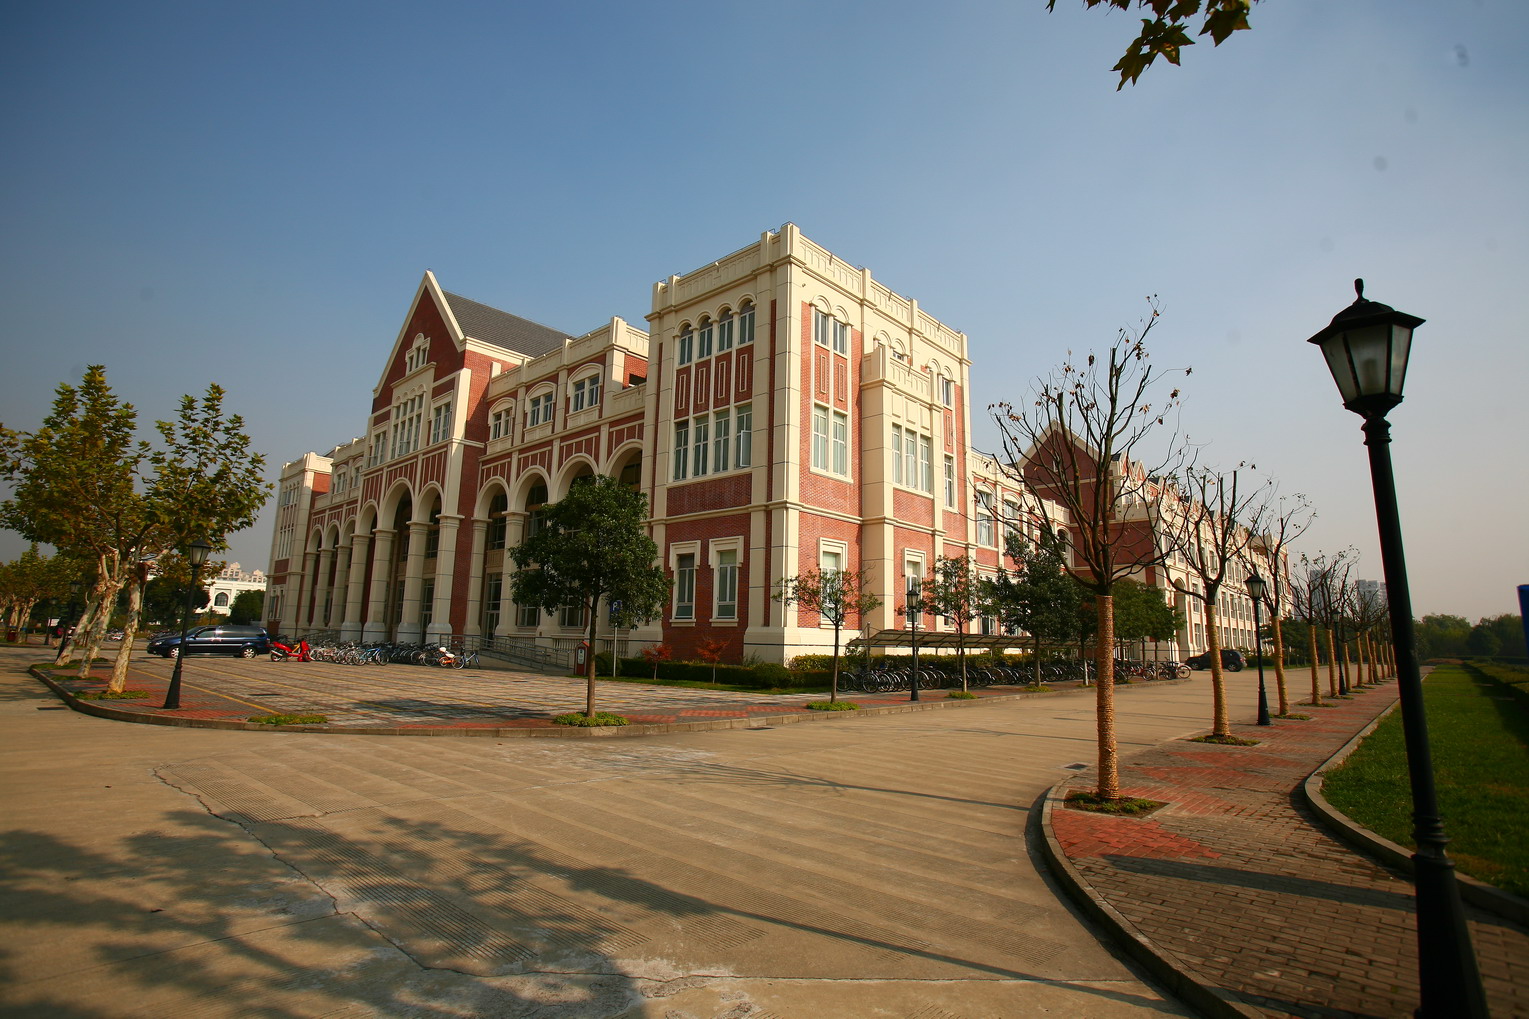 上海外國語大學英語學院